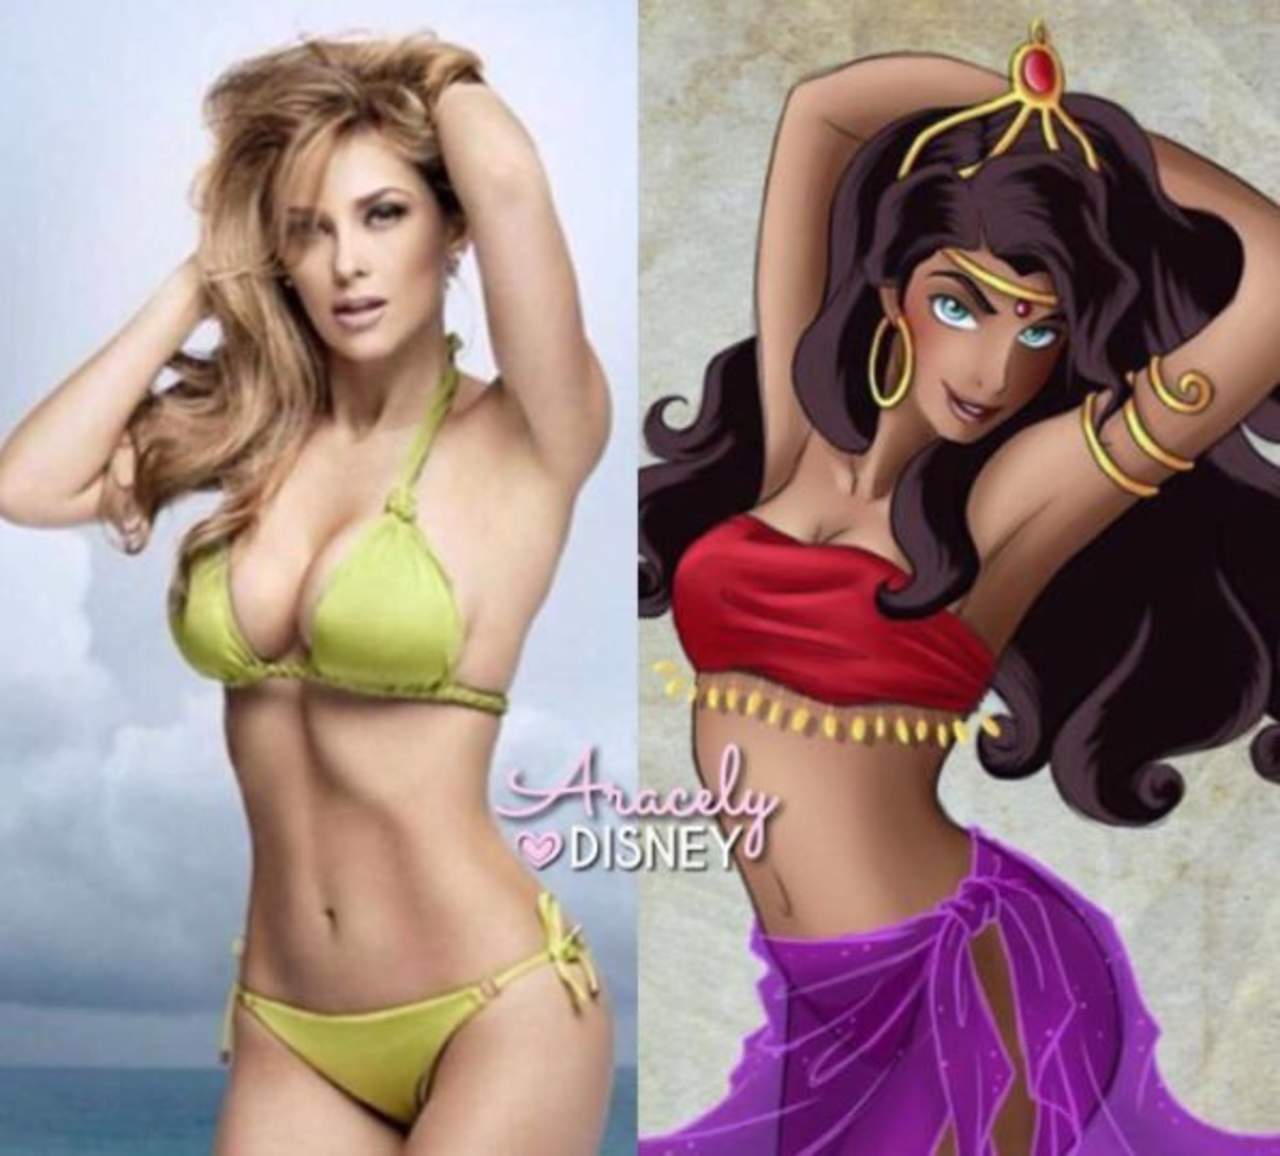 Arámbula de 42 años de edad luce un bikini color verde limón junto a la versión de sí misma en princesa animada, ambas muestran una escultural figura que se llevó los halagos de los fans. (ESPECIAL)